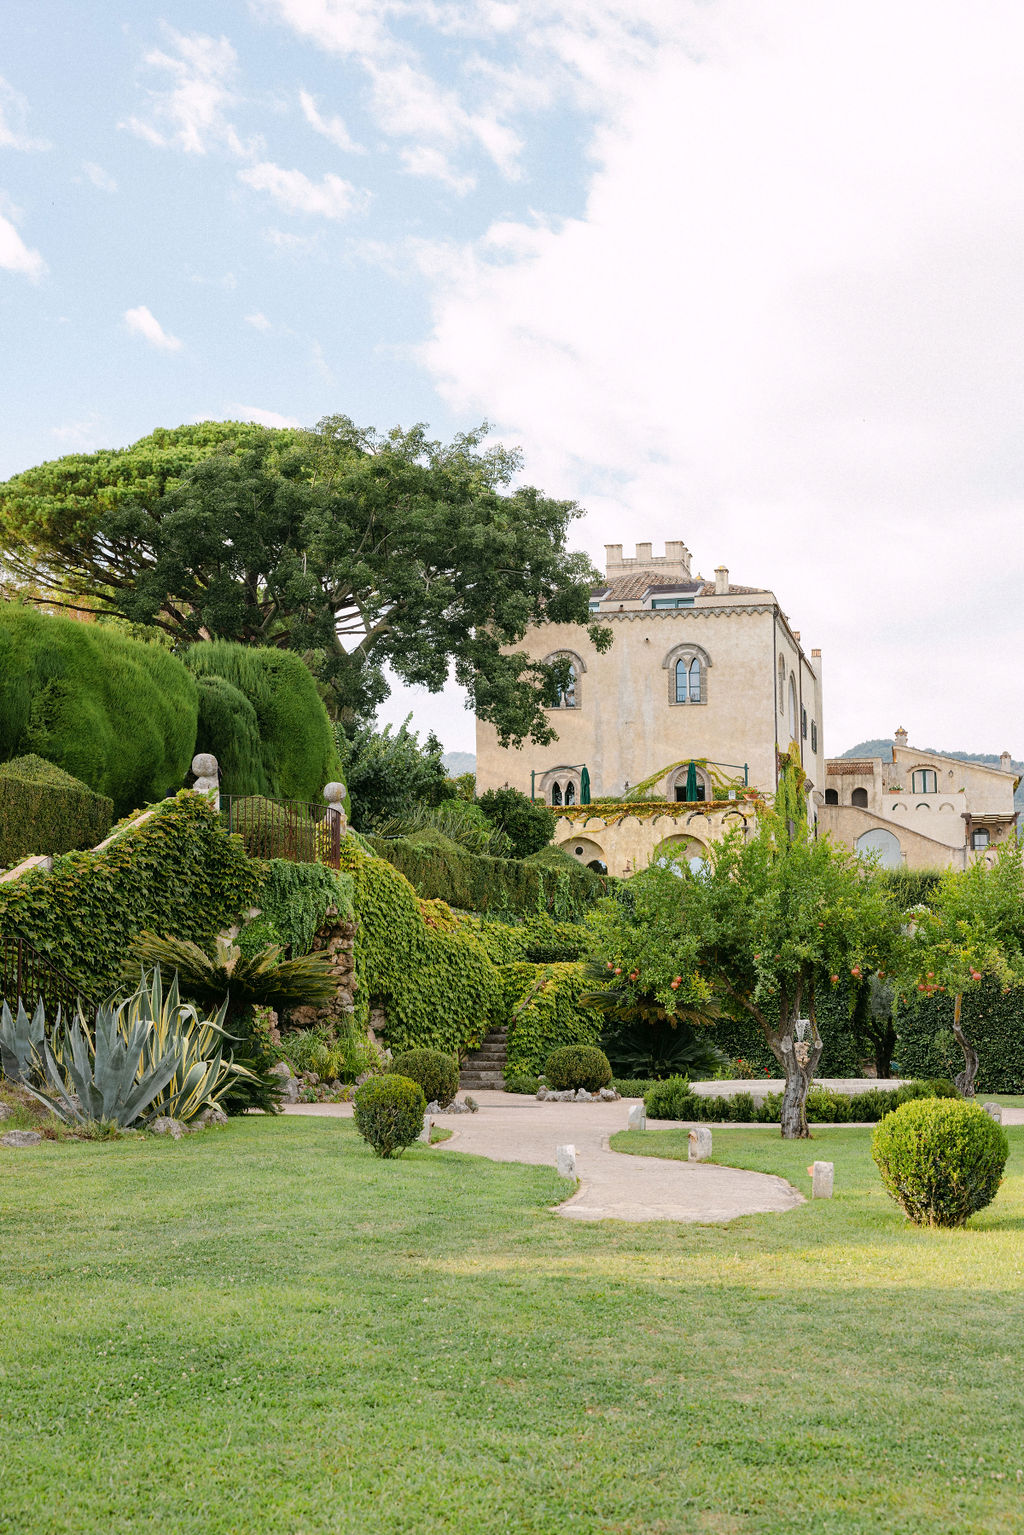 Villa cimbrone garden